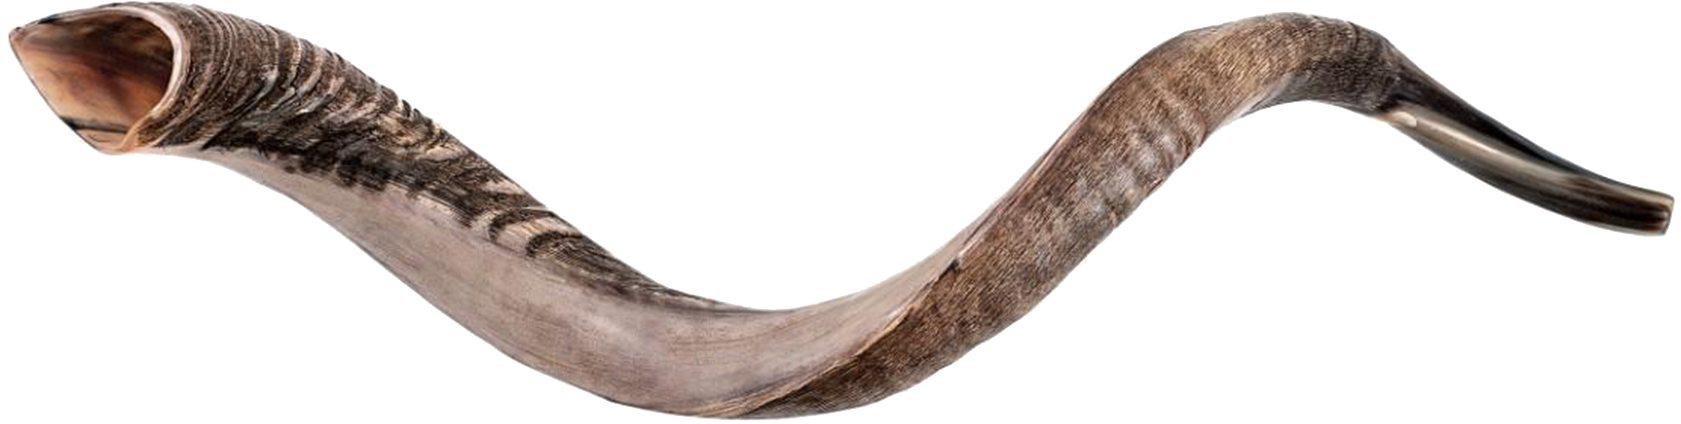 A Close Up Of A Horn